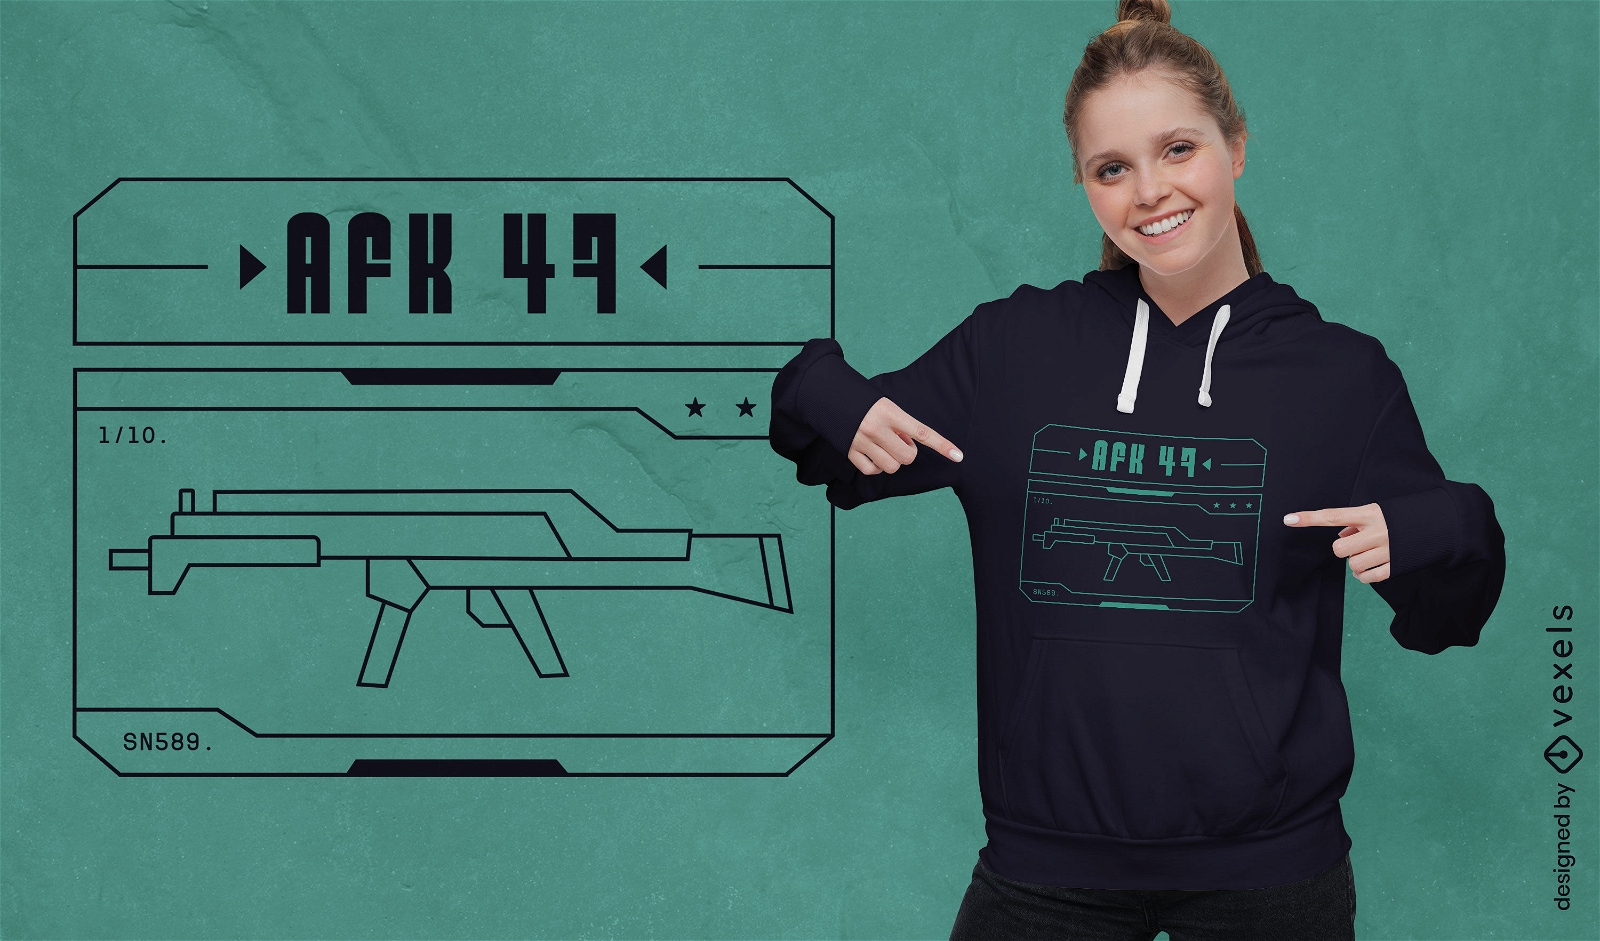 AFK 47 shooter gaming t-shirt design